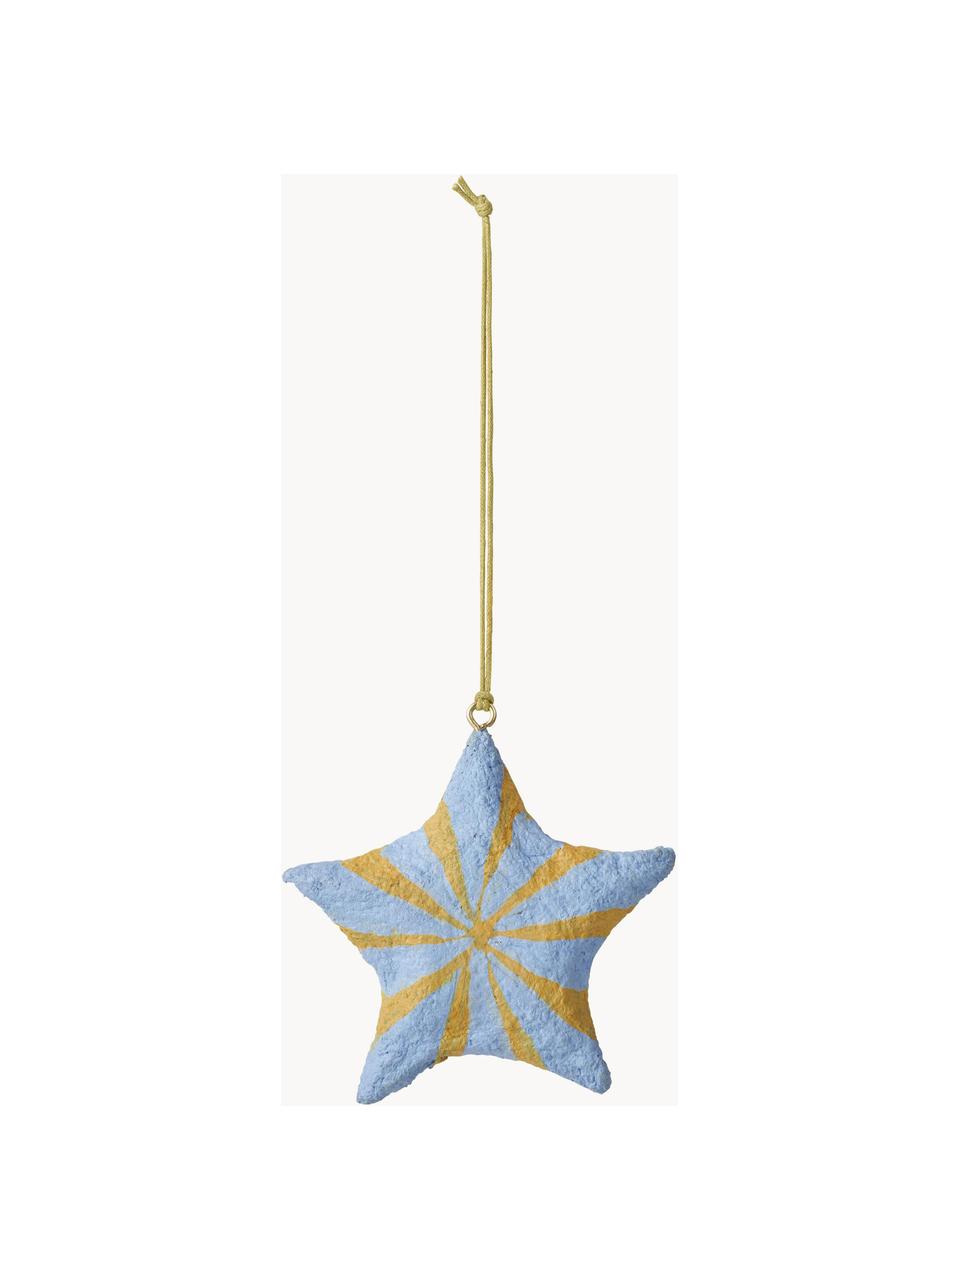 Ozdoby na vánoční stromeček ve tvaru hvězdy Bomuld, 4 ks, Bavlněná buničina, Modrá, žlutá, Ø 9 cm, V 9 cm